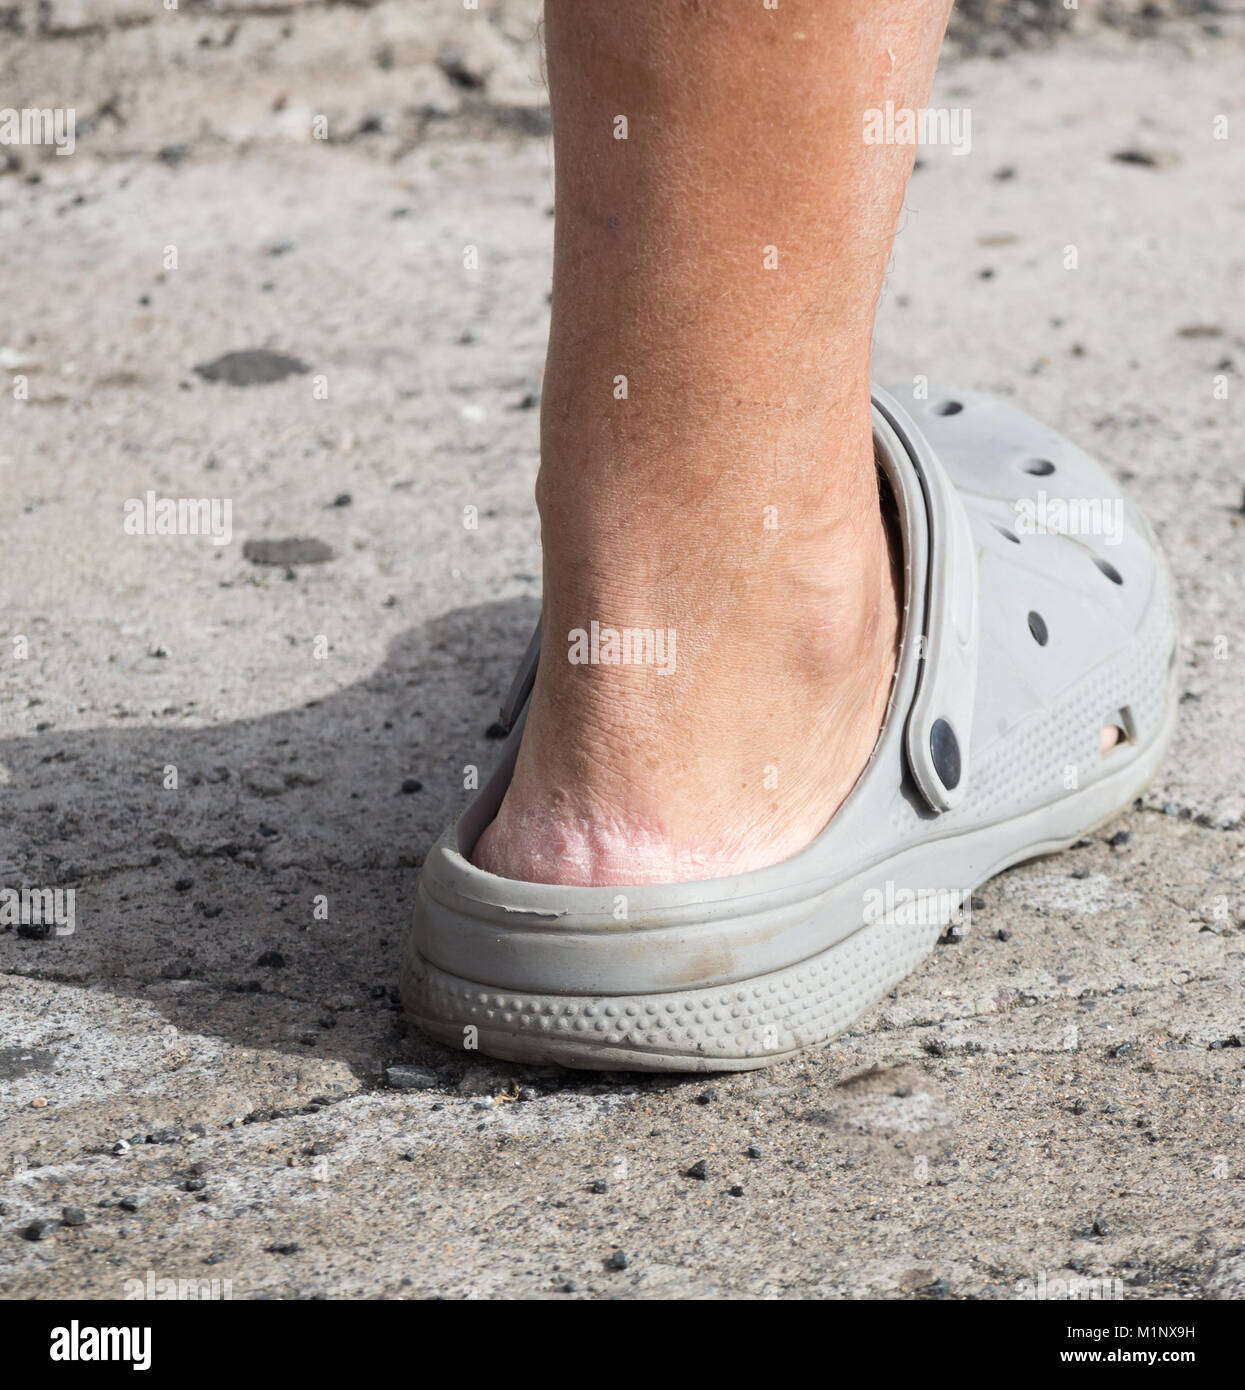 Sandales Crocs. Personne portant Crocs sans chaussettes. La peau craquelée sur le talon Banque D'Images